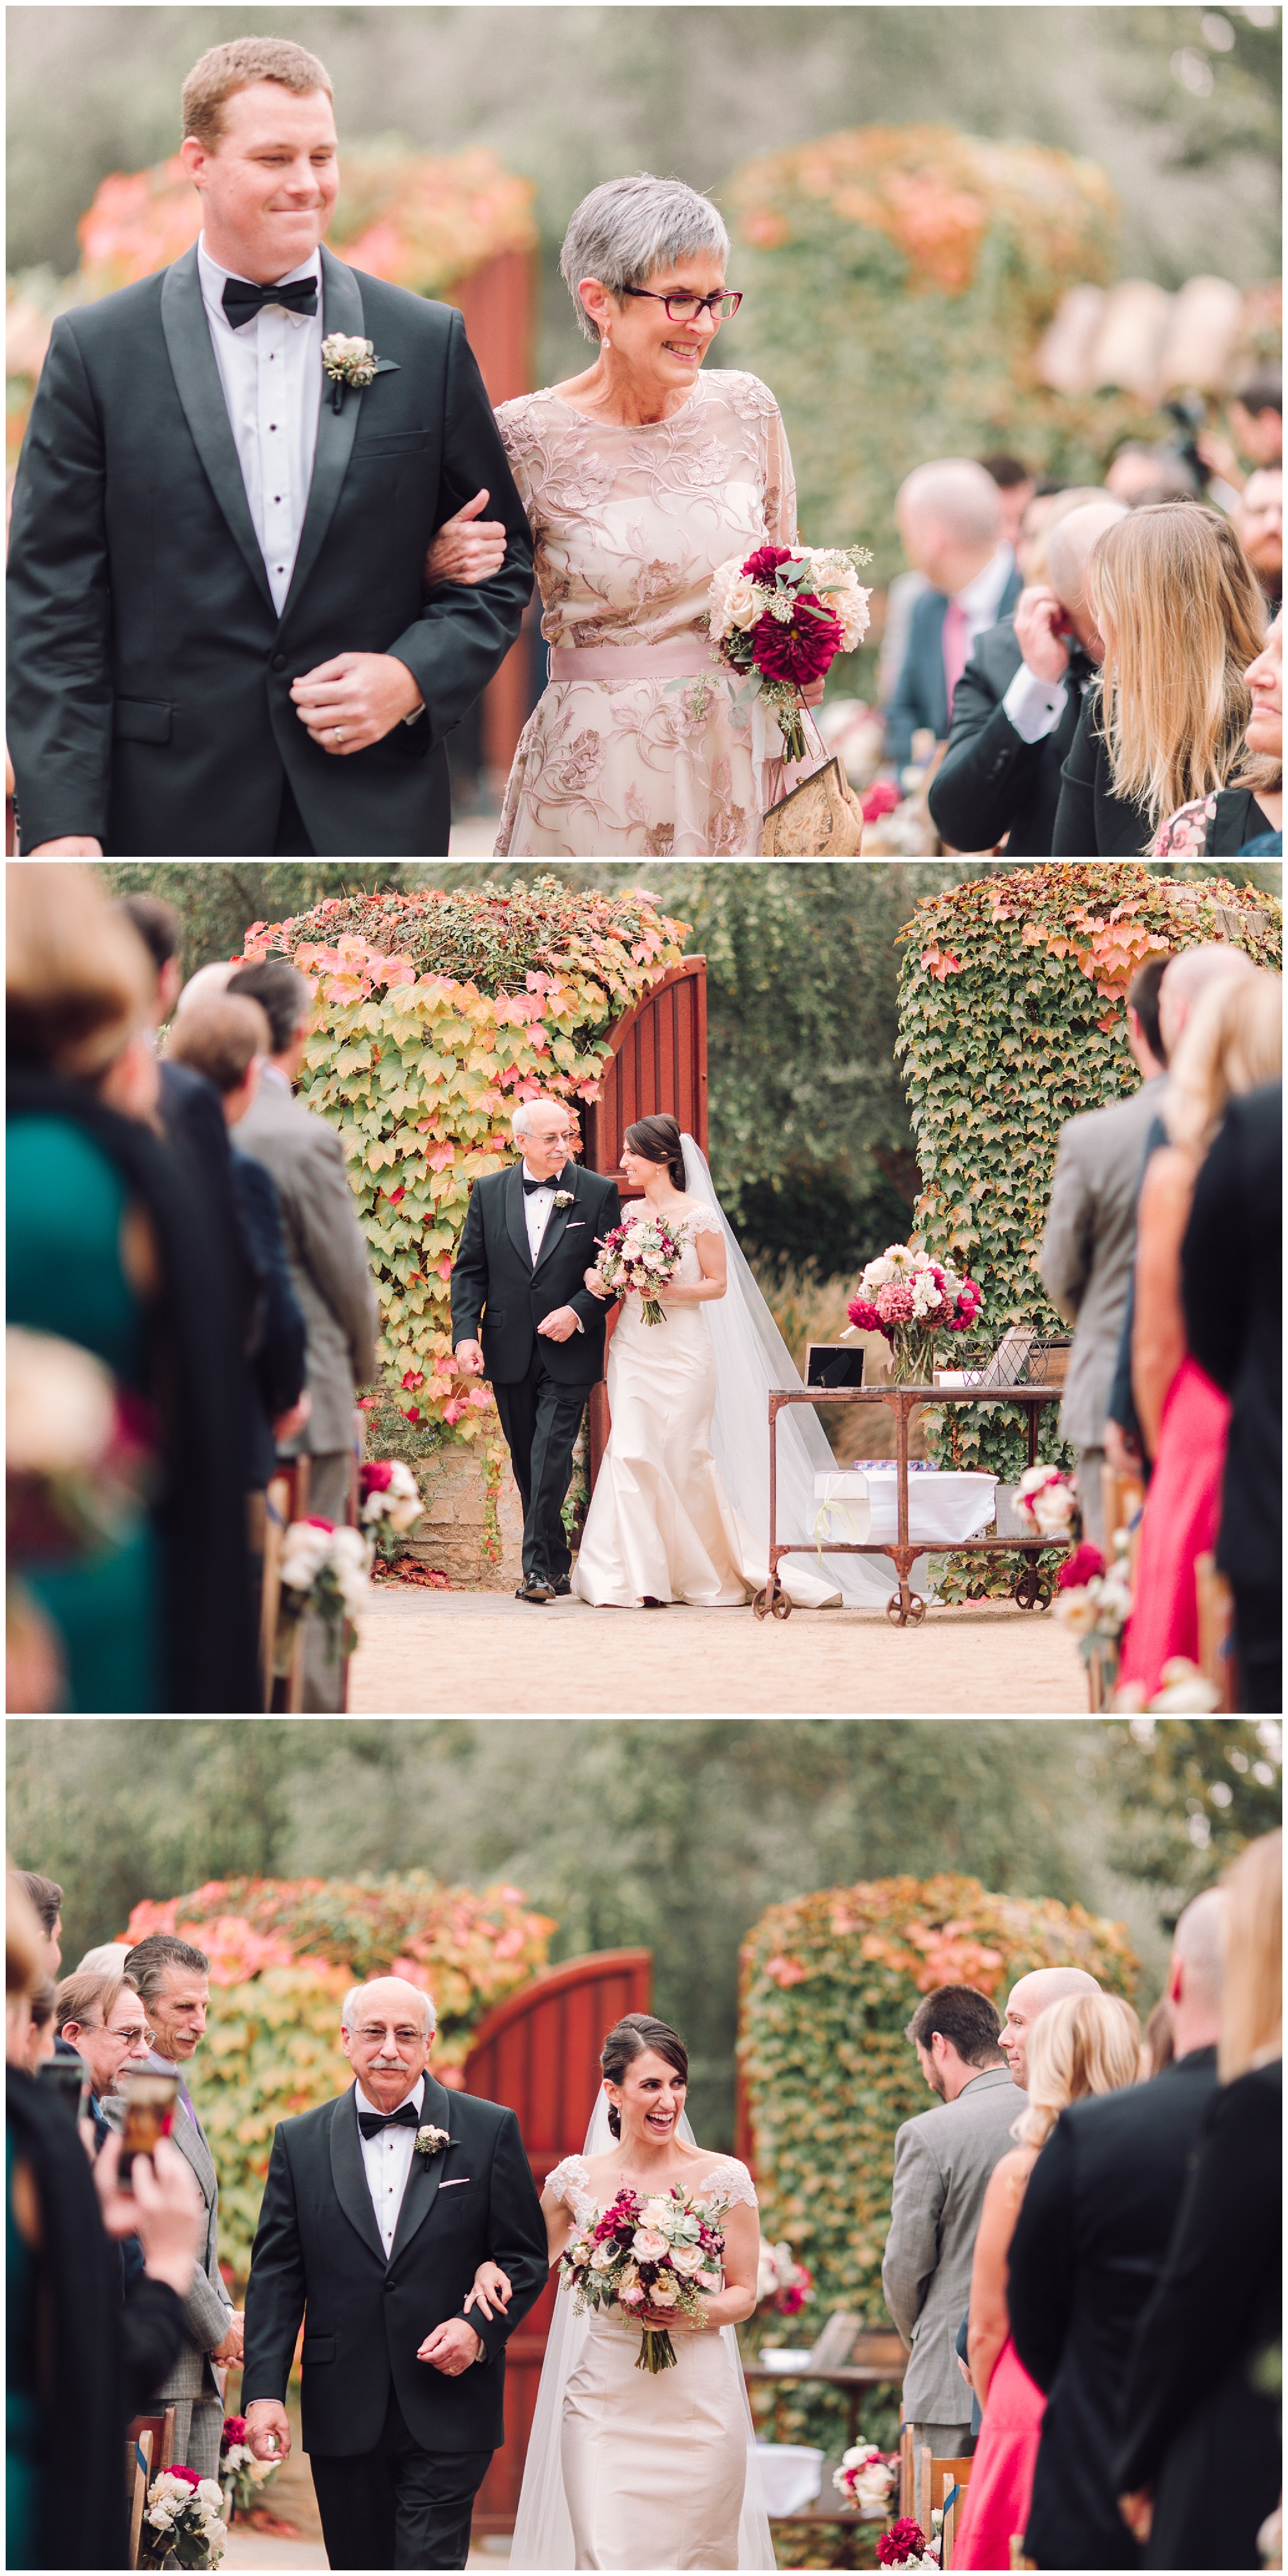 Rachel + Brendan | Ramekins Sonoma Wedding